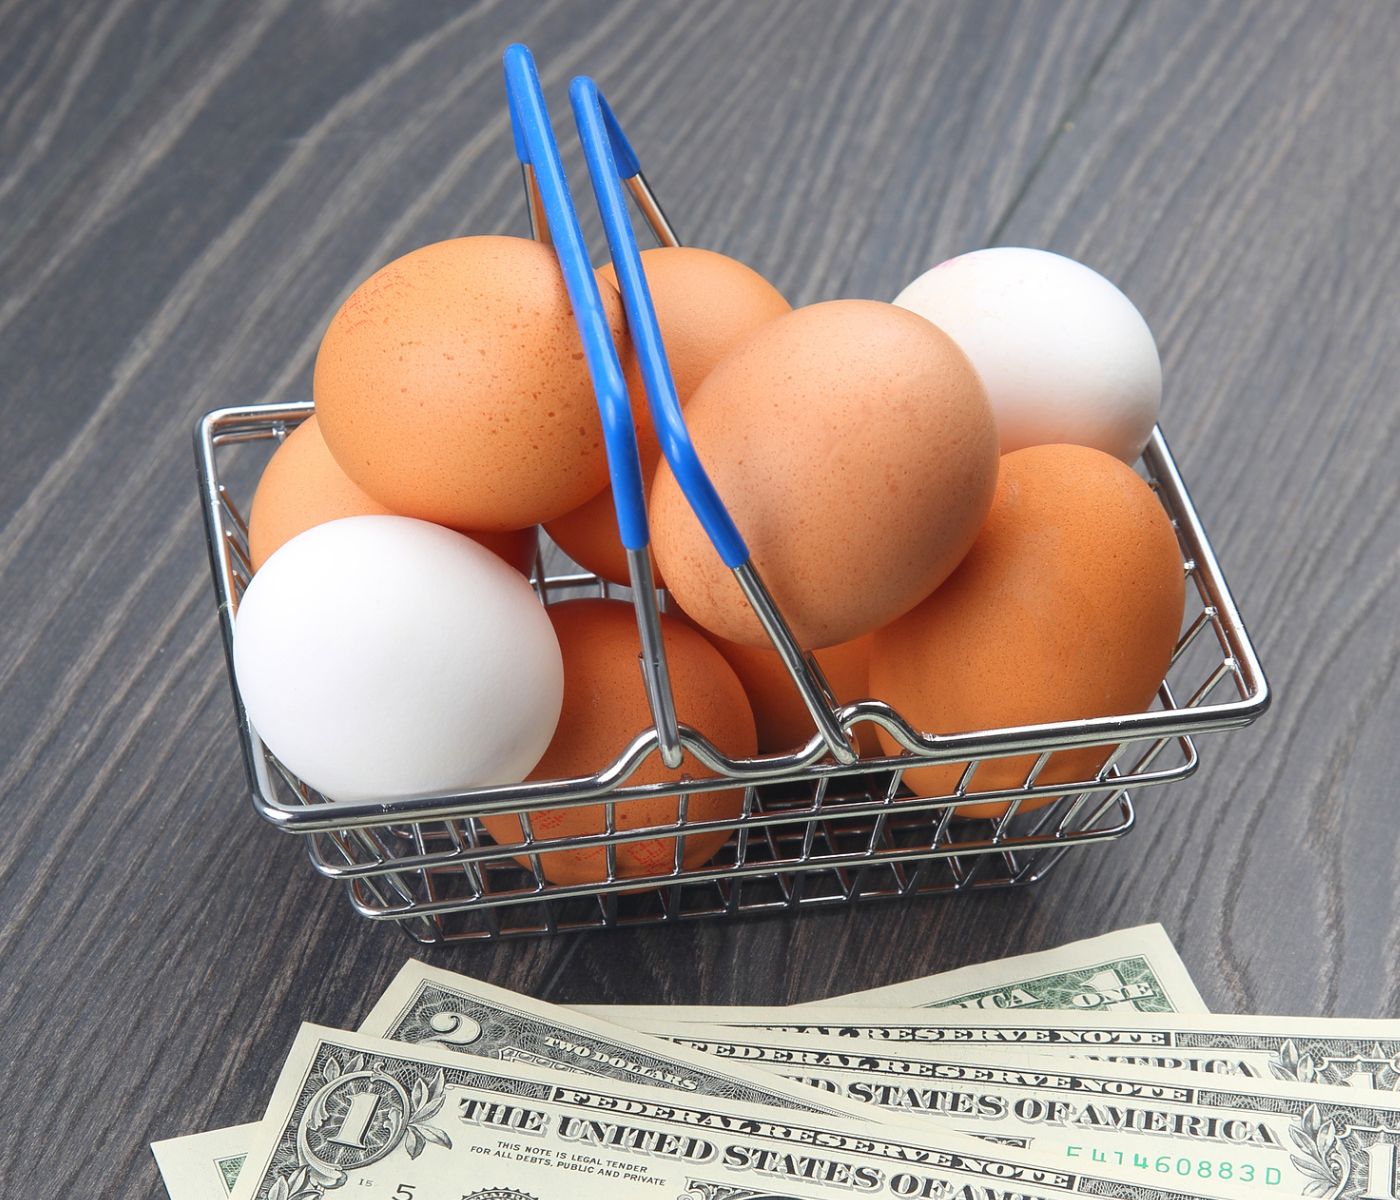 Torpe pestaña ducha EE.UU.: Precio de los huevos se ha desplomado frente al alza del año pasado  - aviNews, la revista global de avicultura